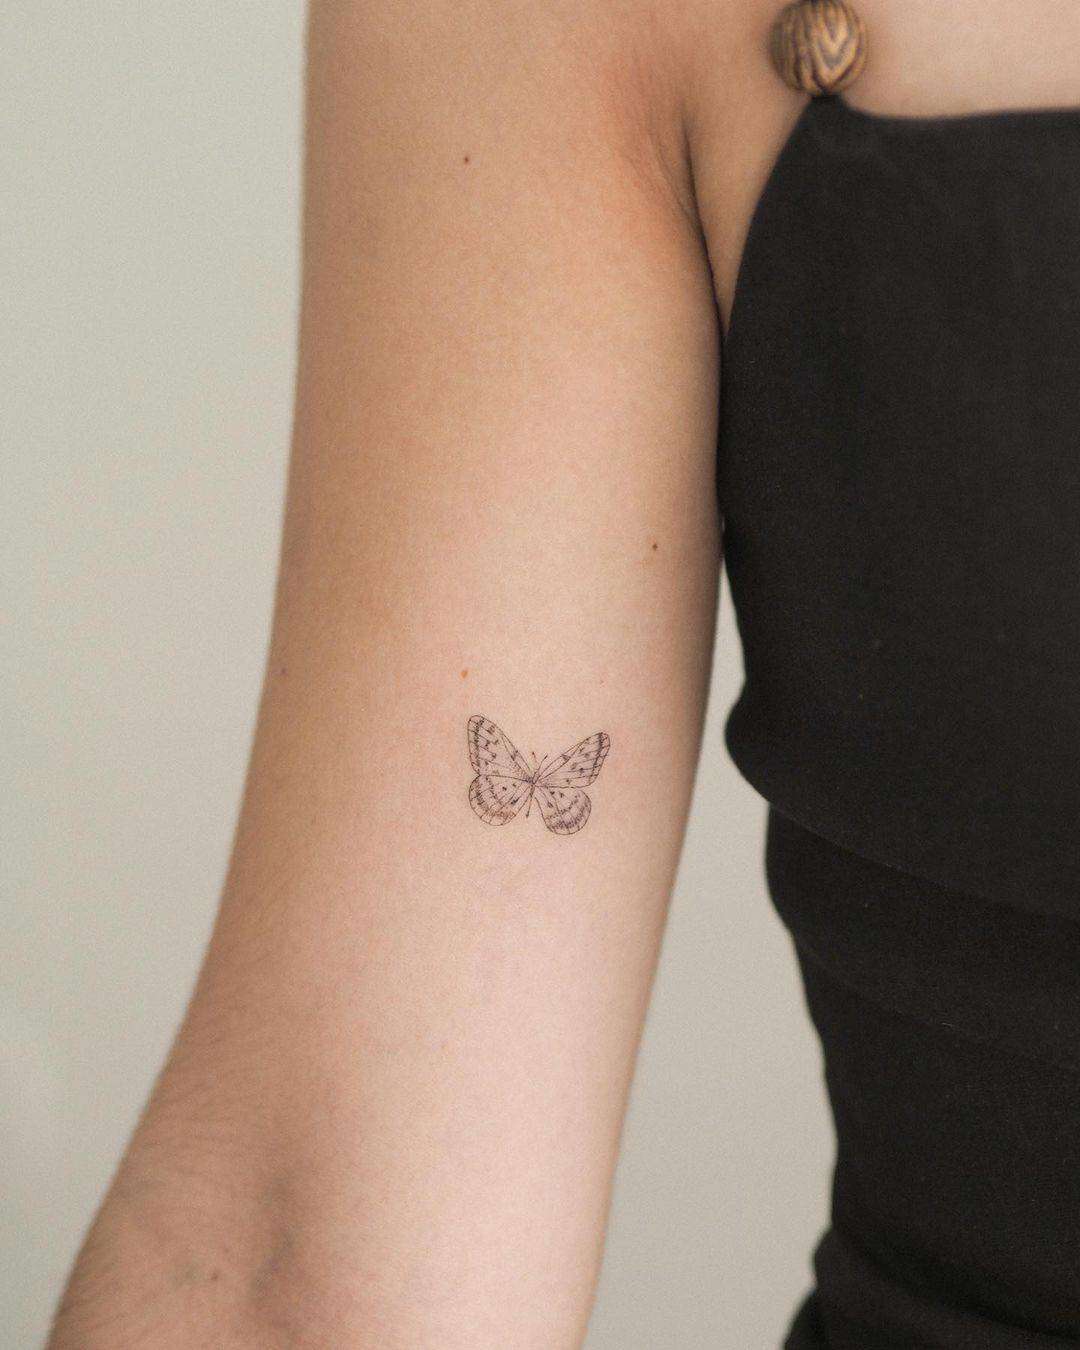 Tatuajes pequeños y bonitos: mariposa minimalista